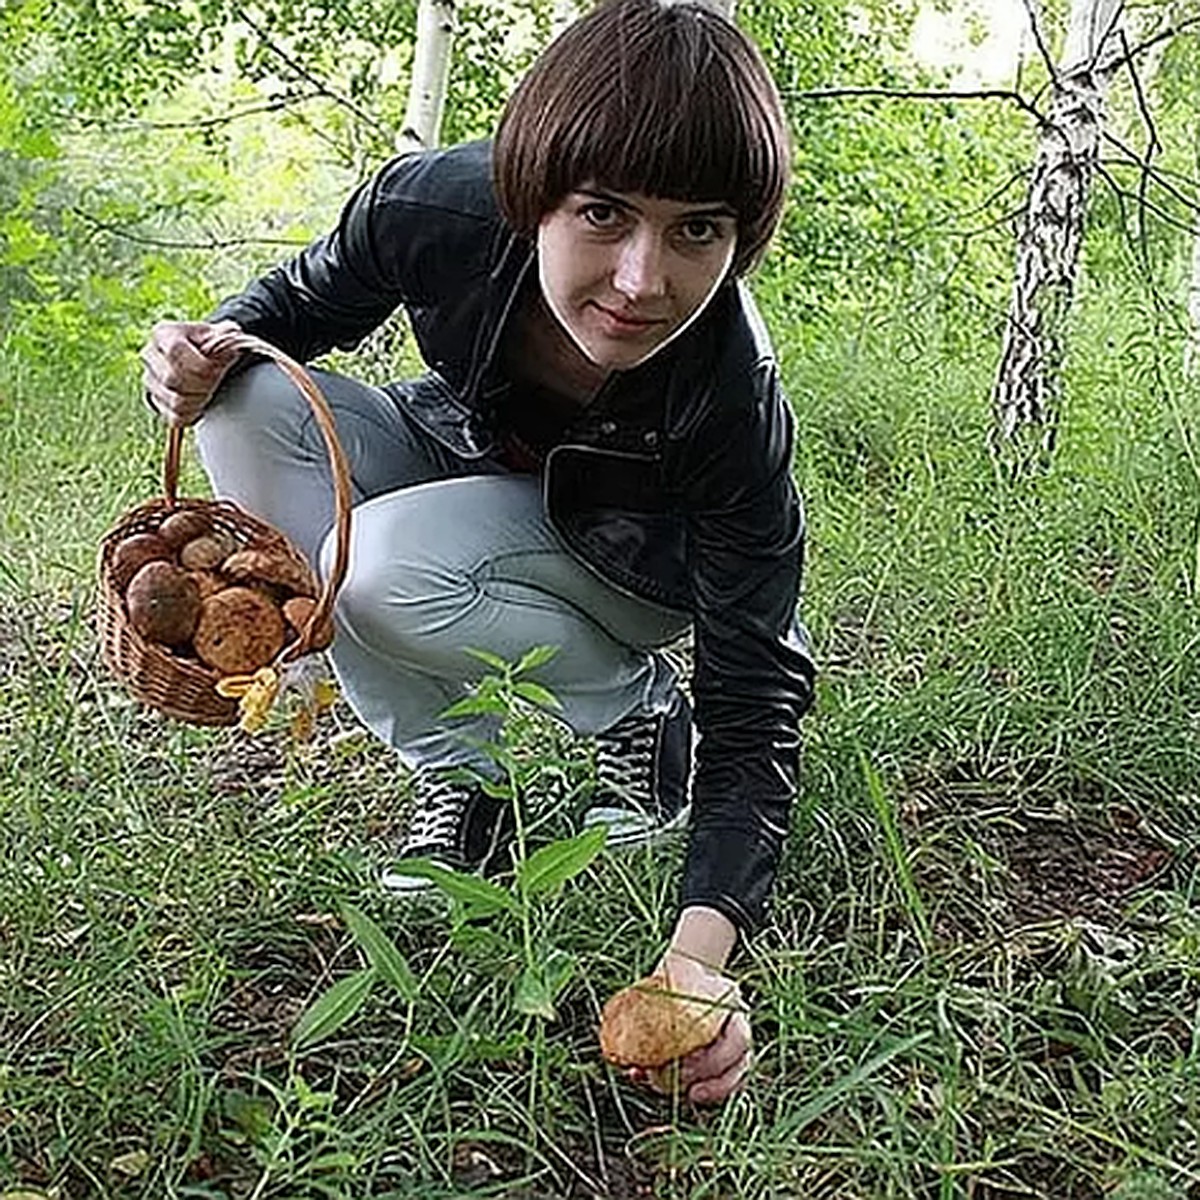 Собирают грибы молодёжь